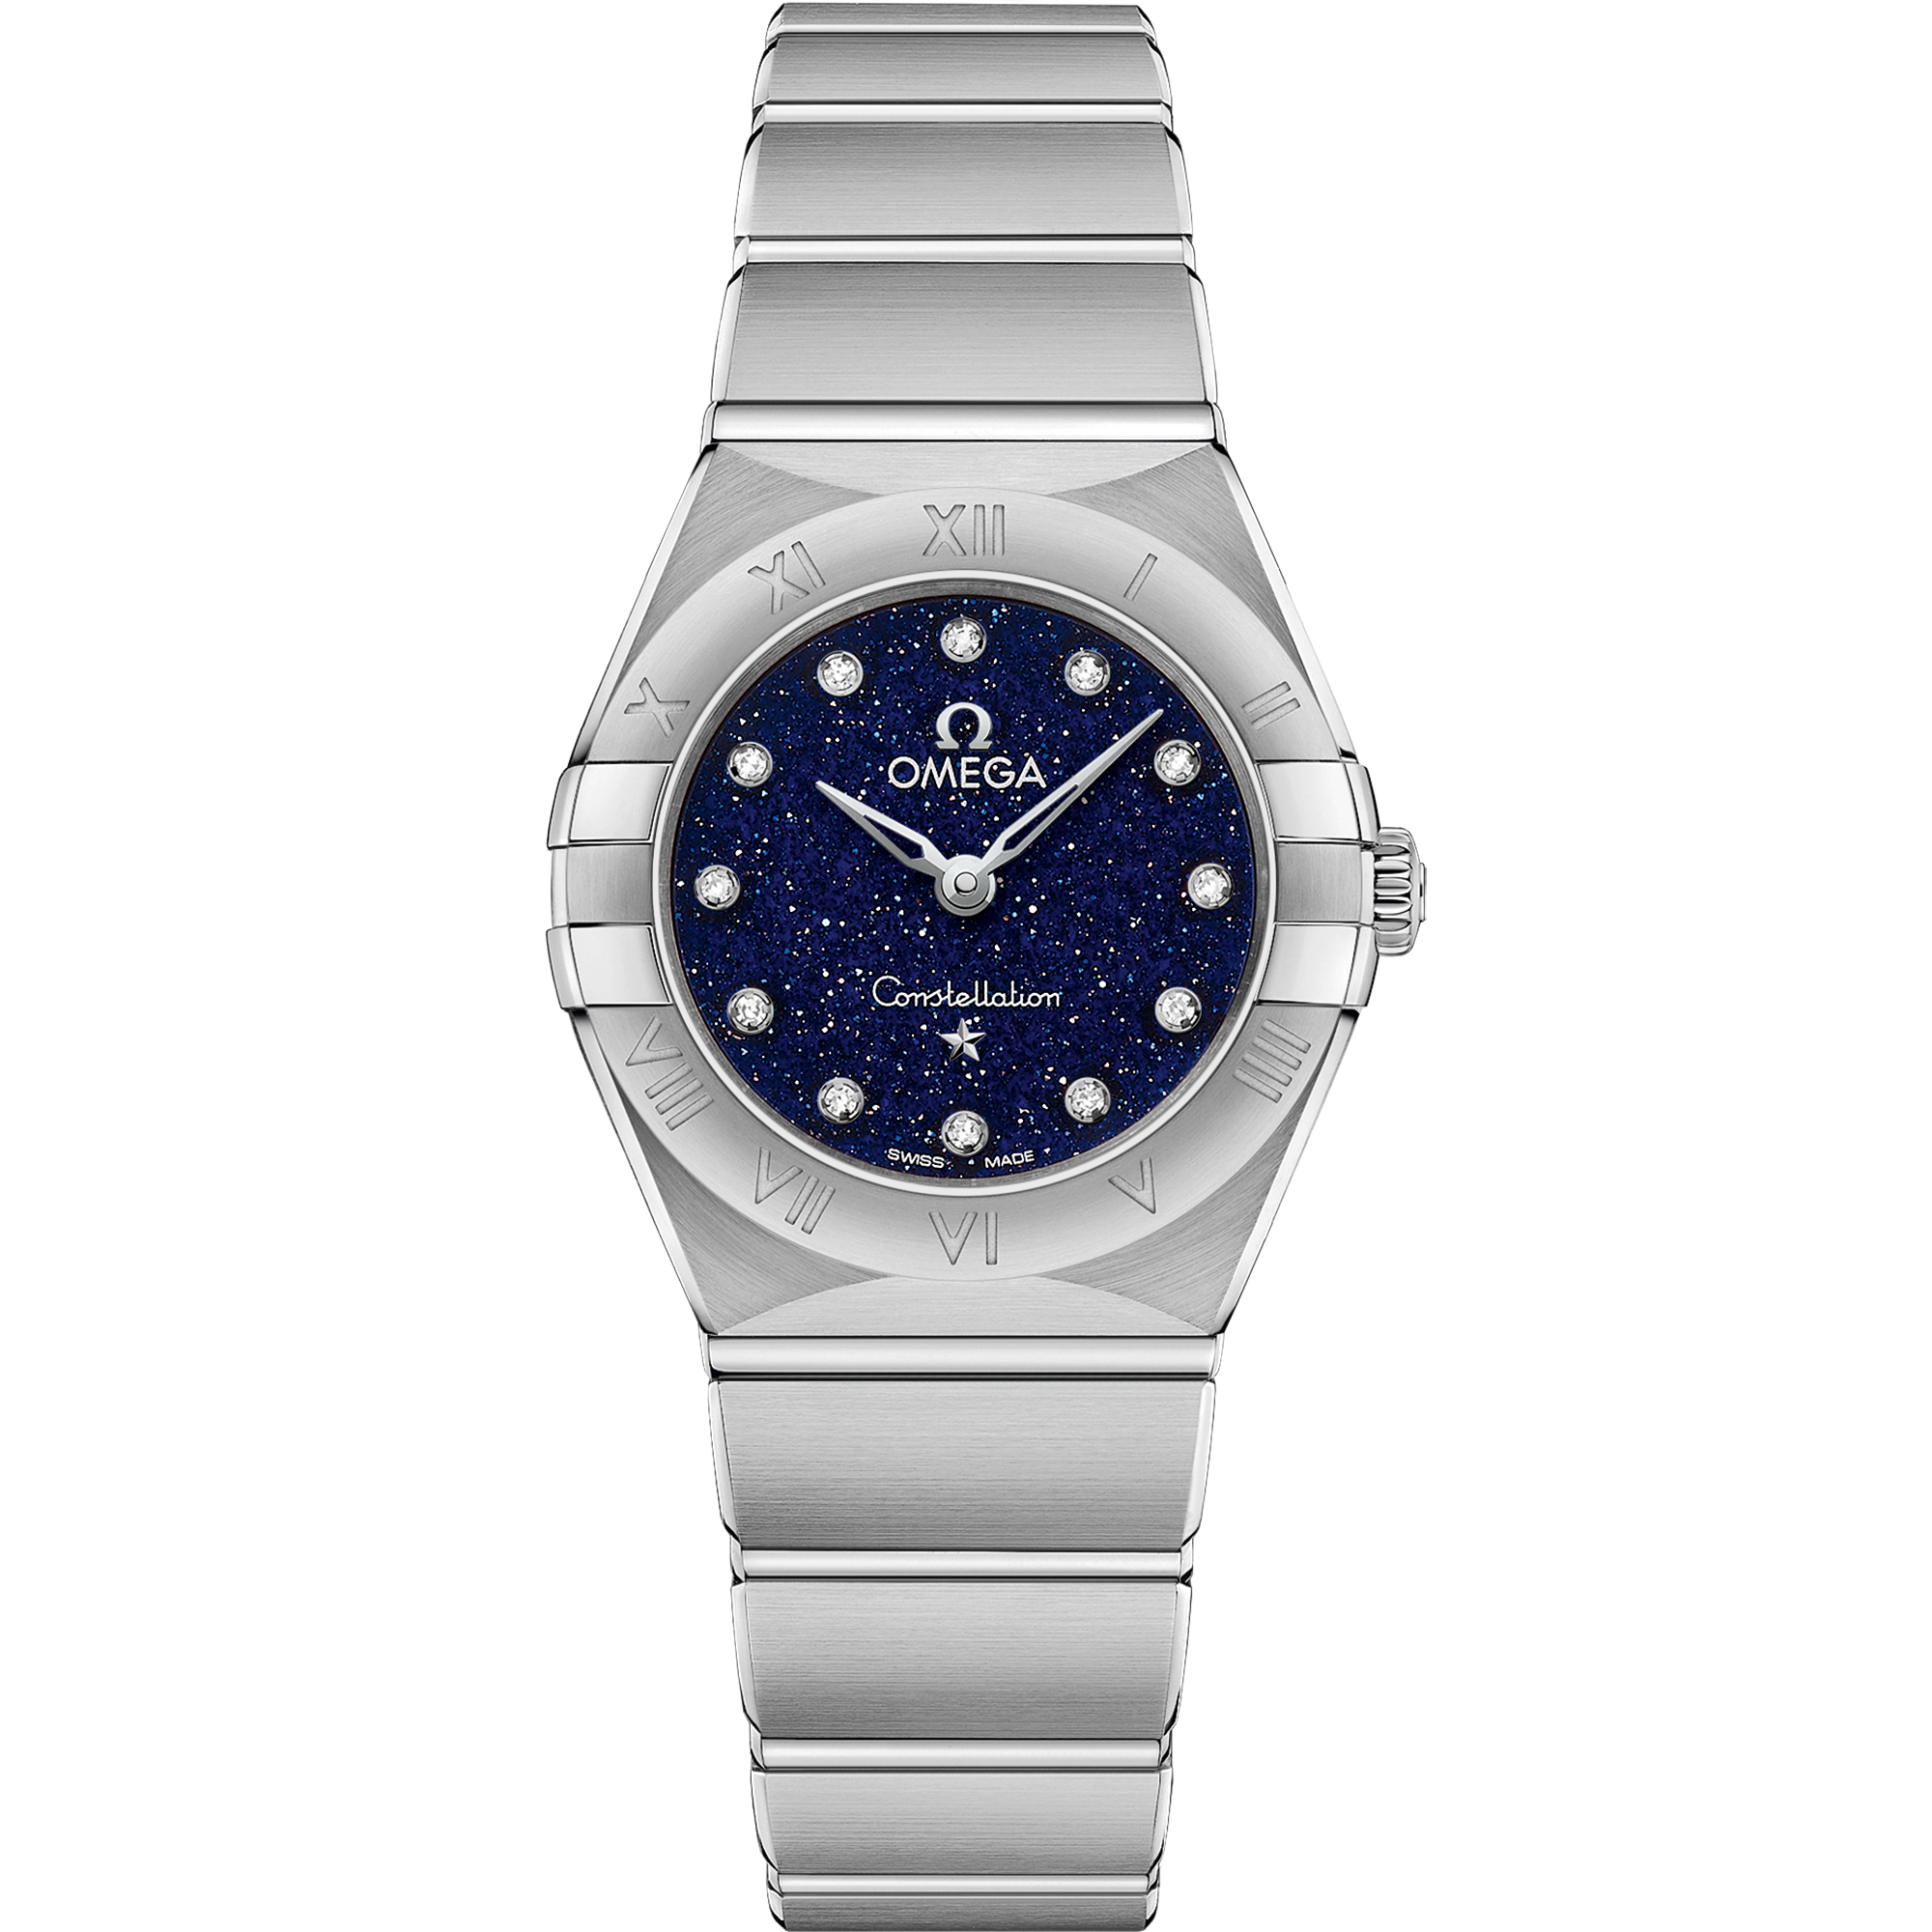 Uhr mit Blau Zifferblatt auf Stahl Gehäuse mit Edelstahlarmband bracelet - Constellation 25 mm, Stahl mit Stahlband - 131.10.25.60.53.001